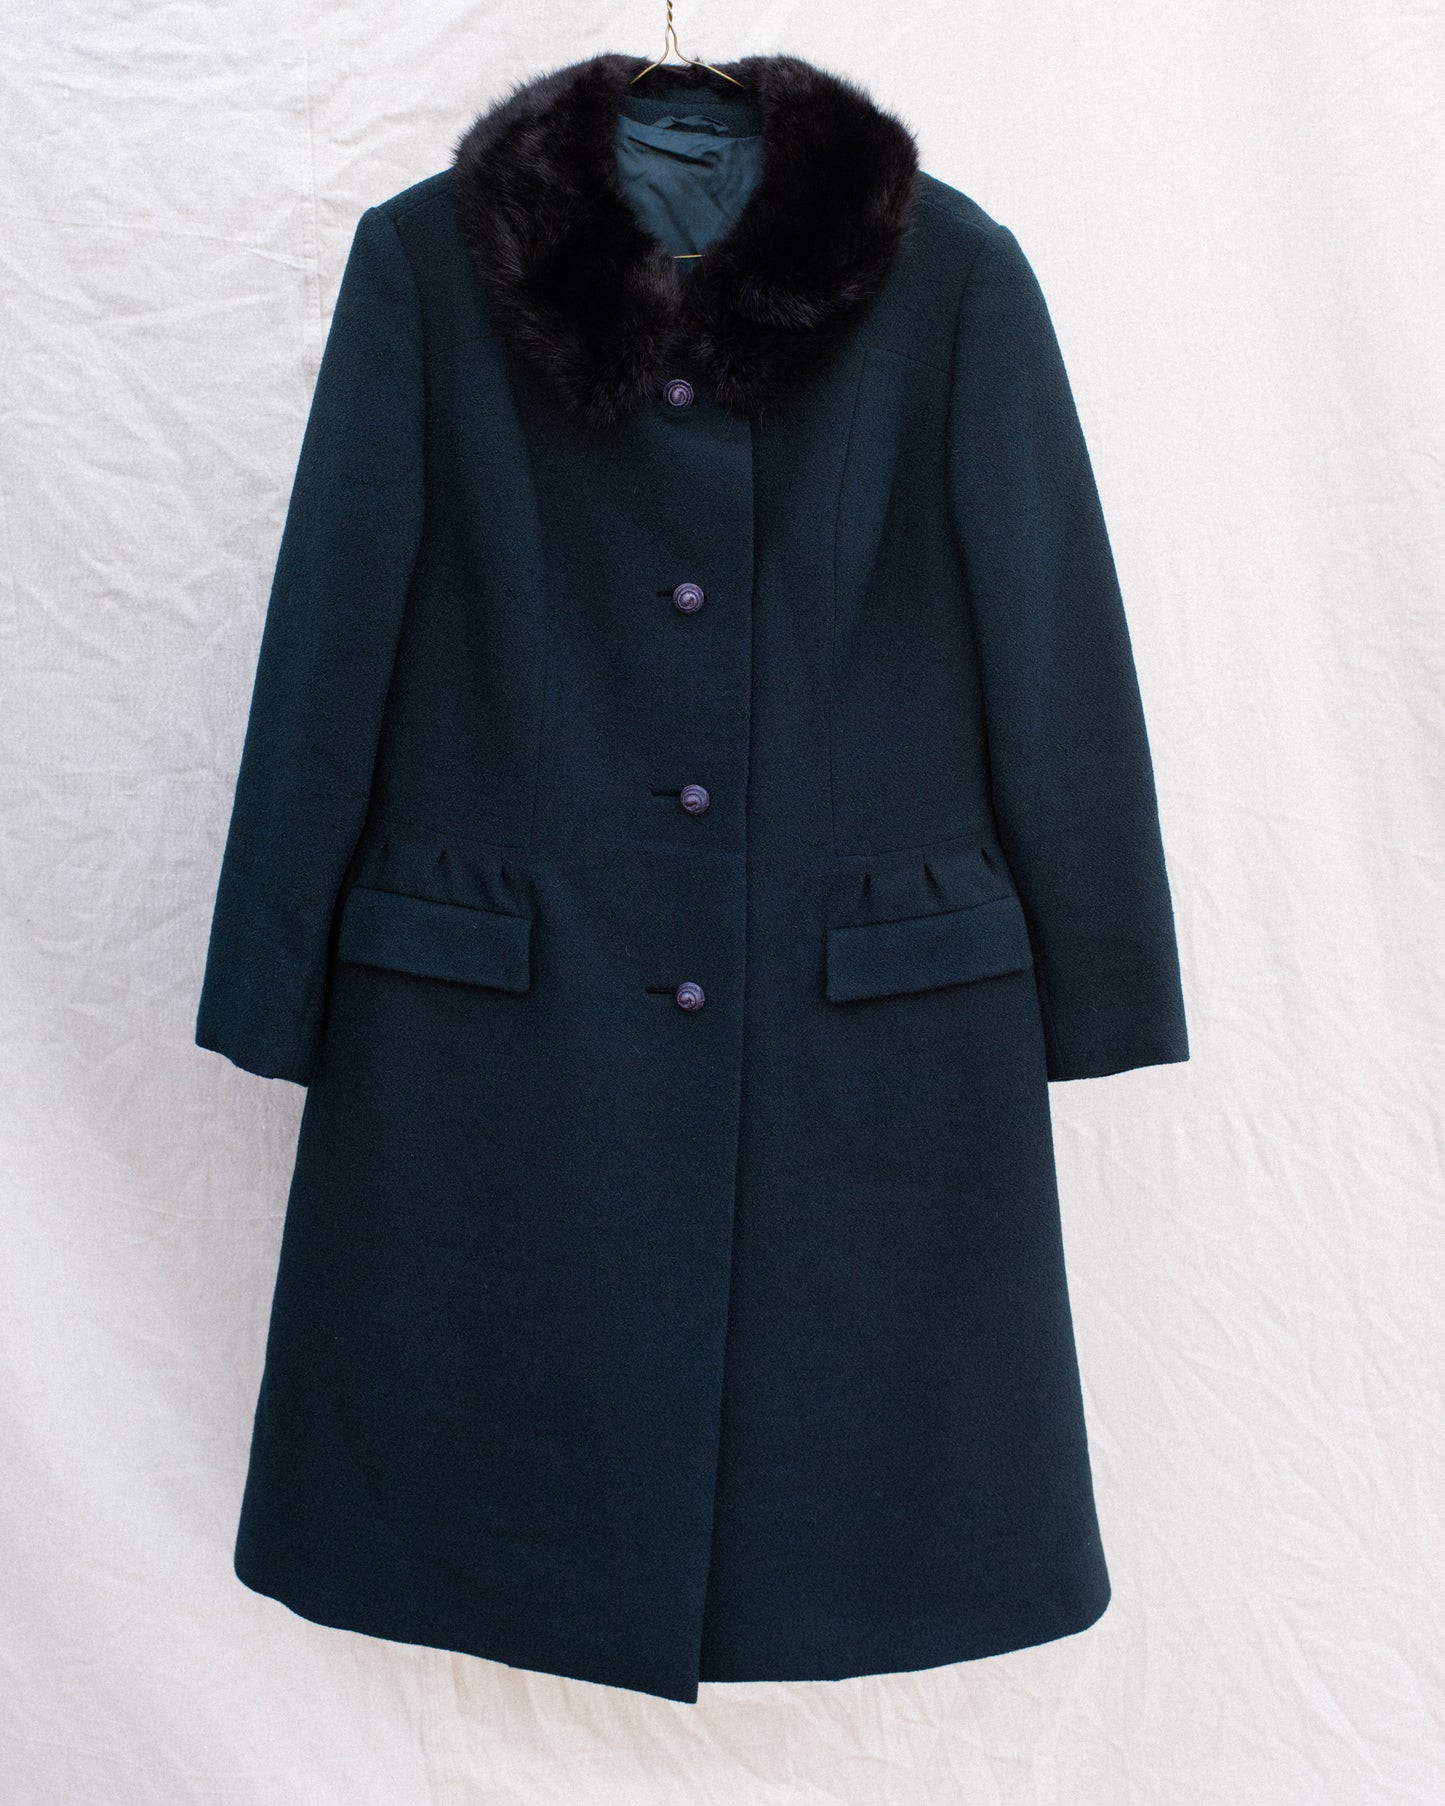 Vintage Wool + Fur BERLIN Coat #8 (XS/S)